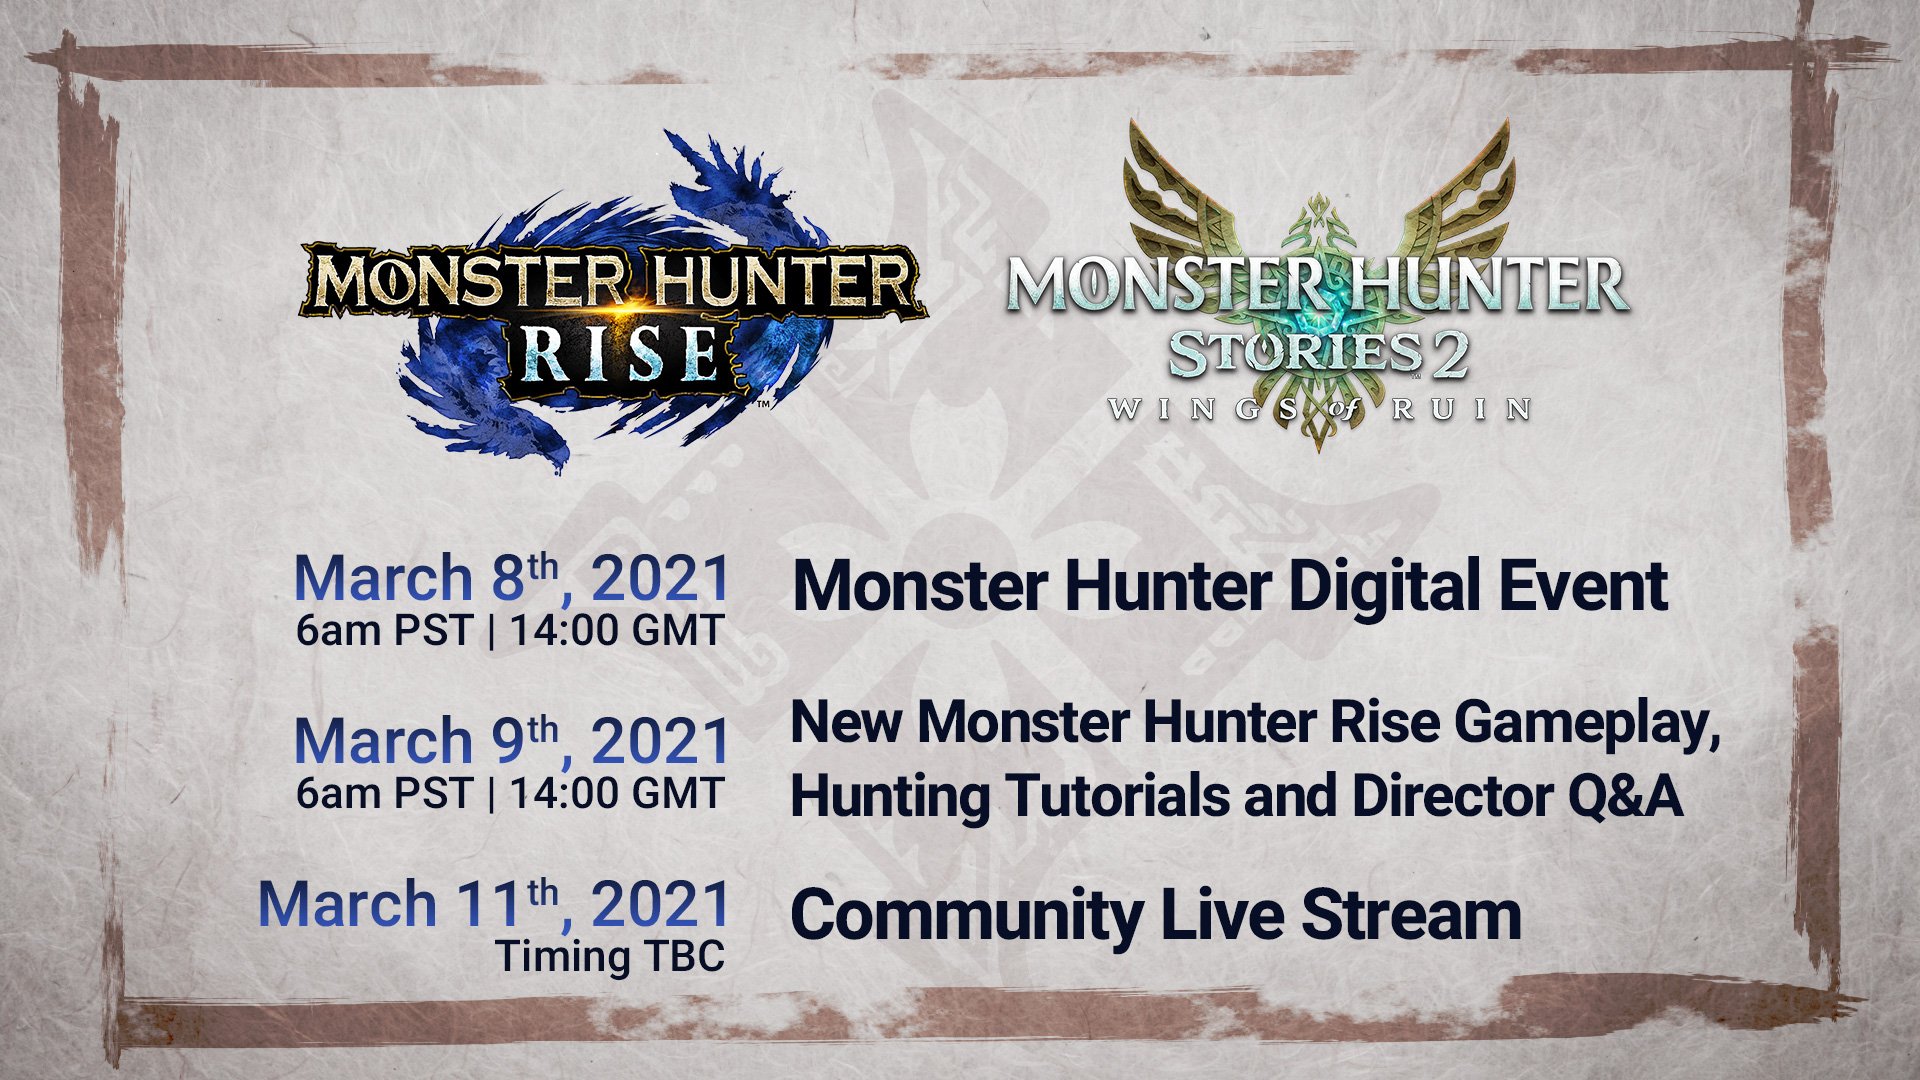 Monster-Hunter-Live-Stream_02-18-21.jpg